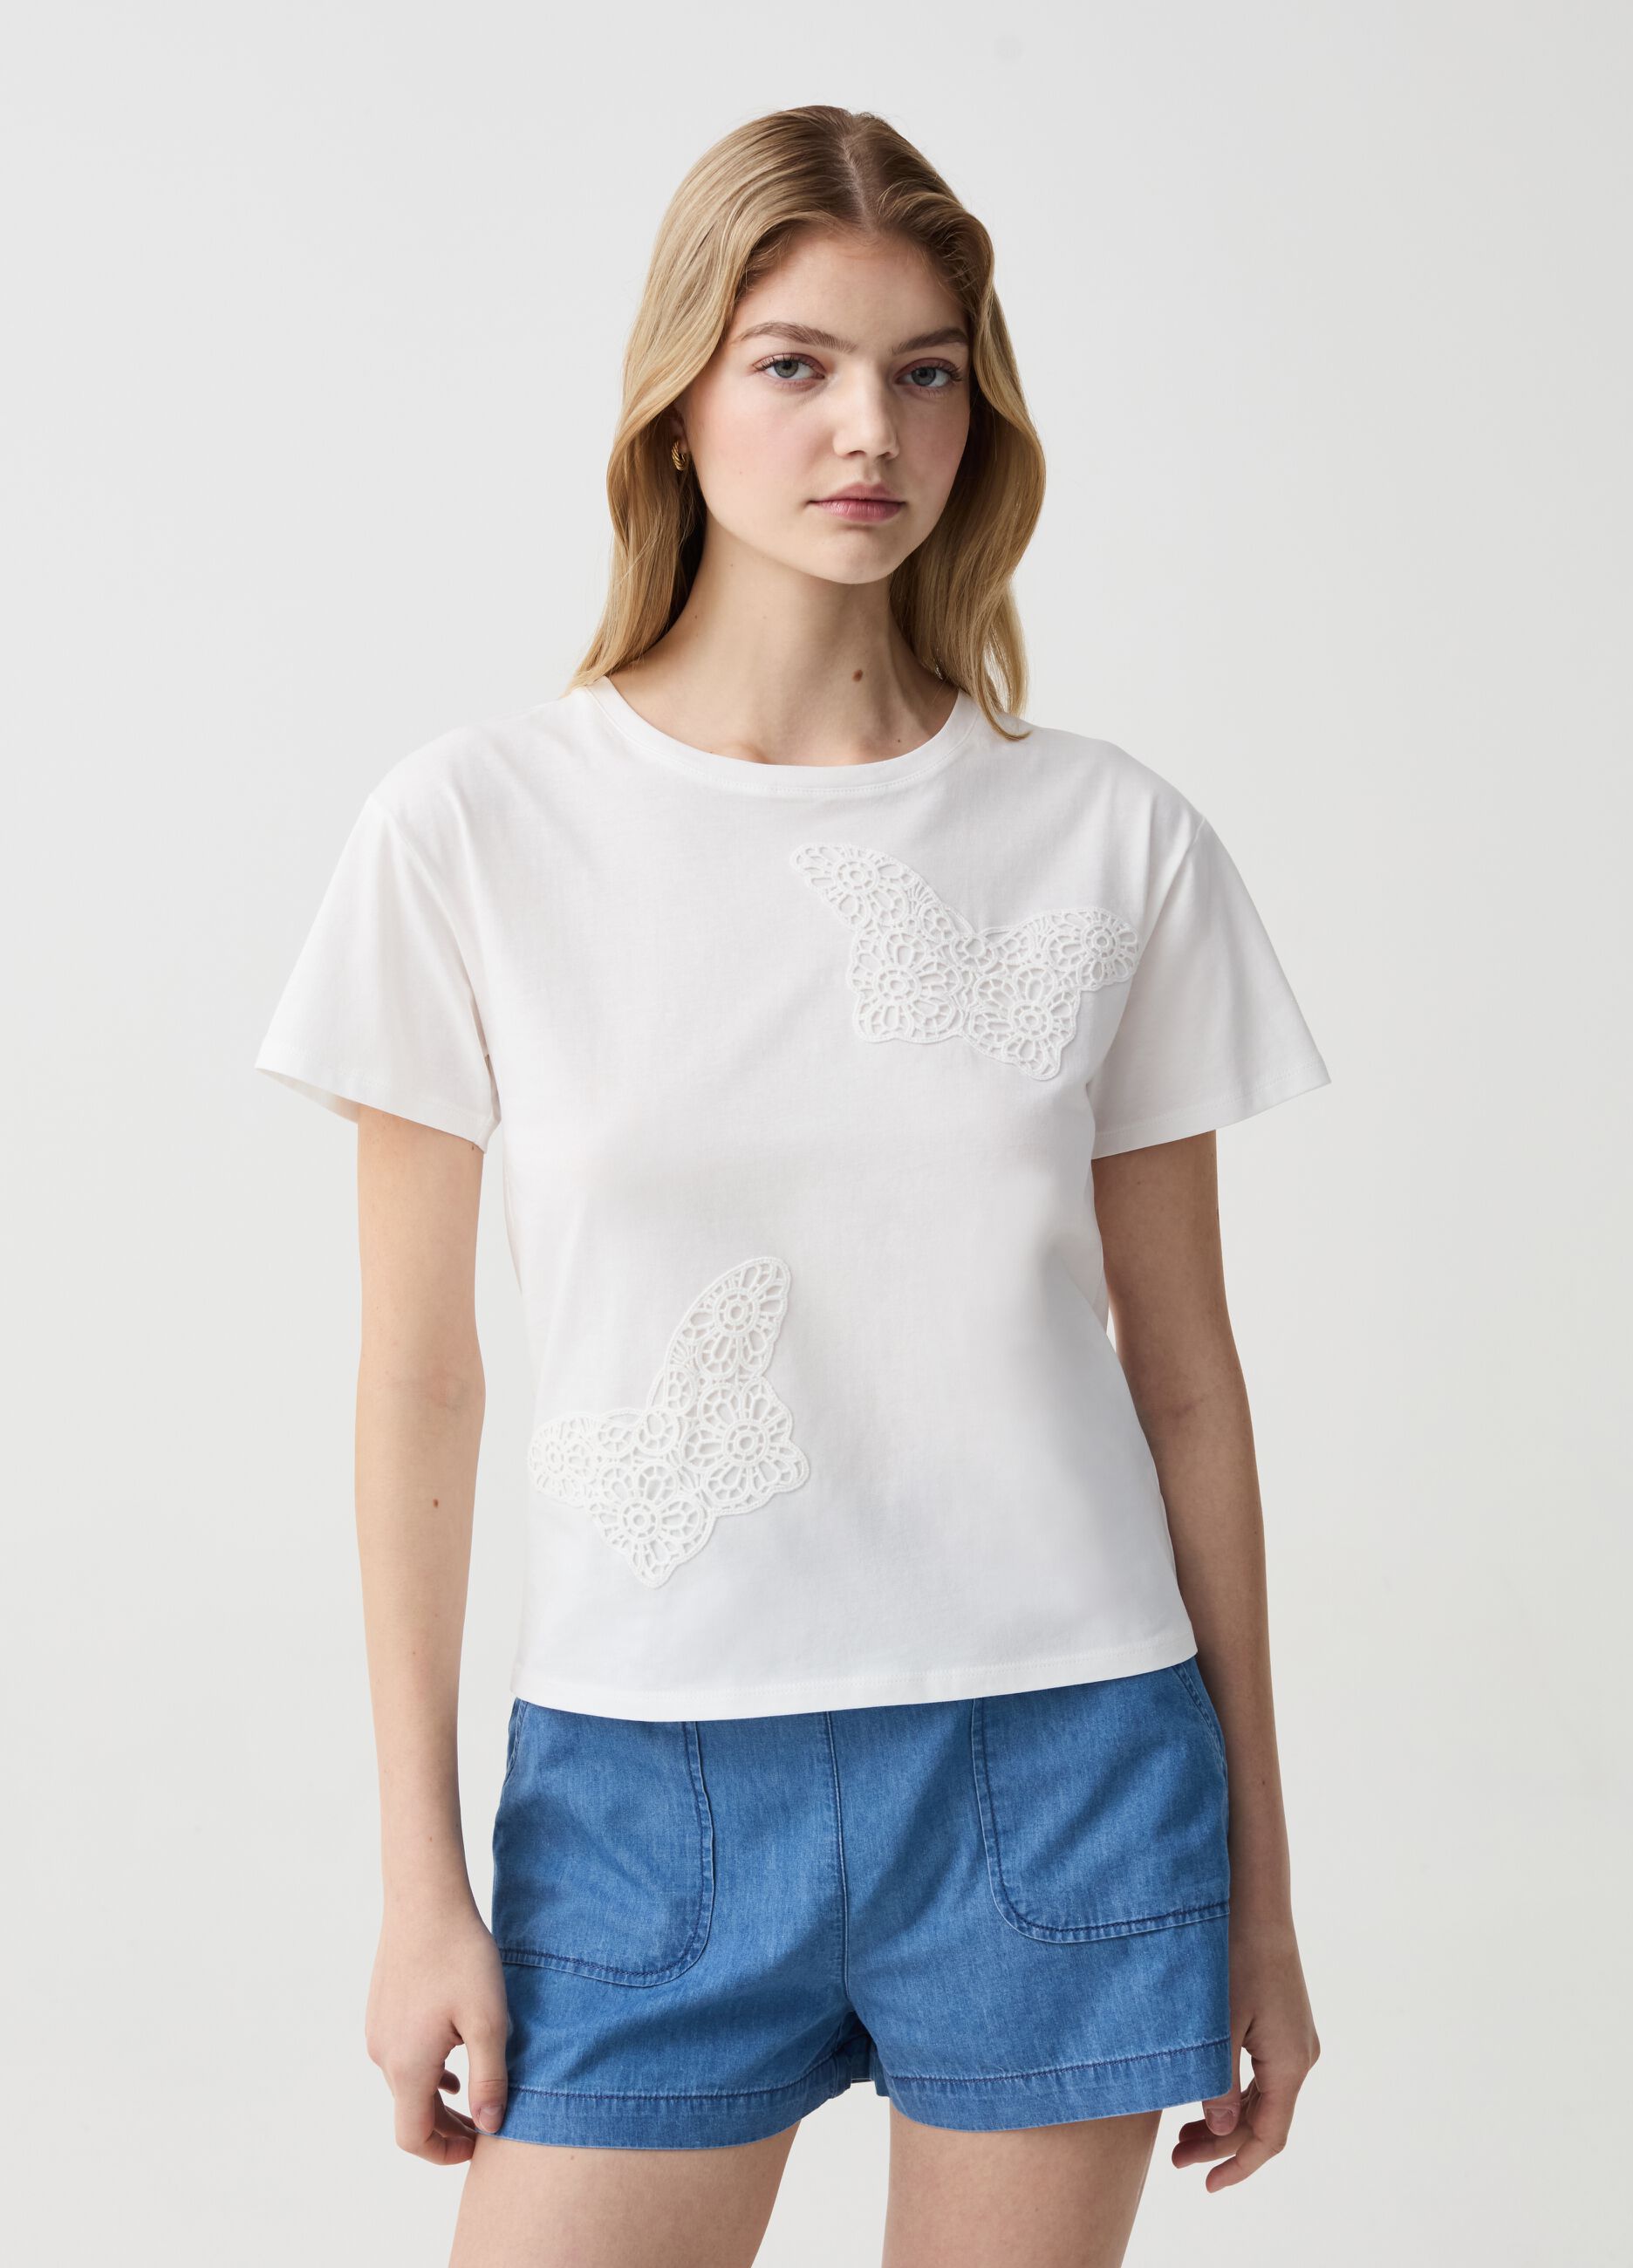 T-shirt con applicazioni farfalle crochet